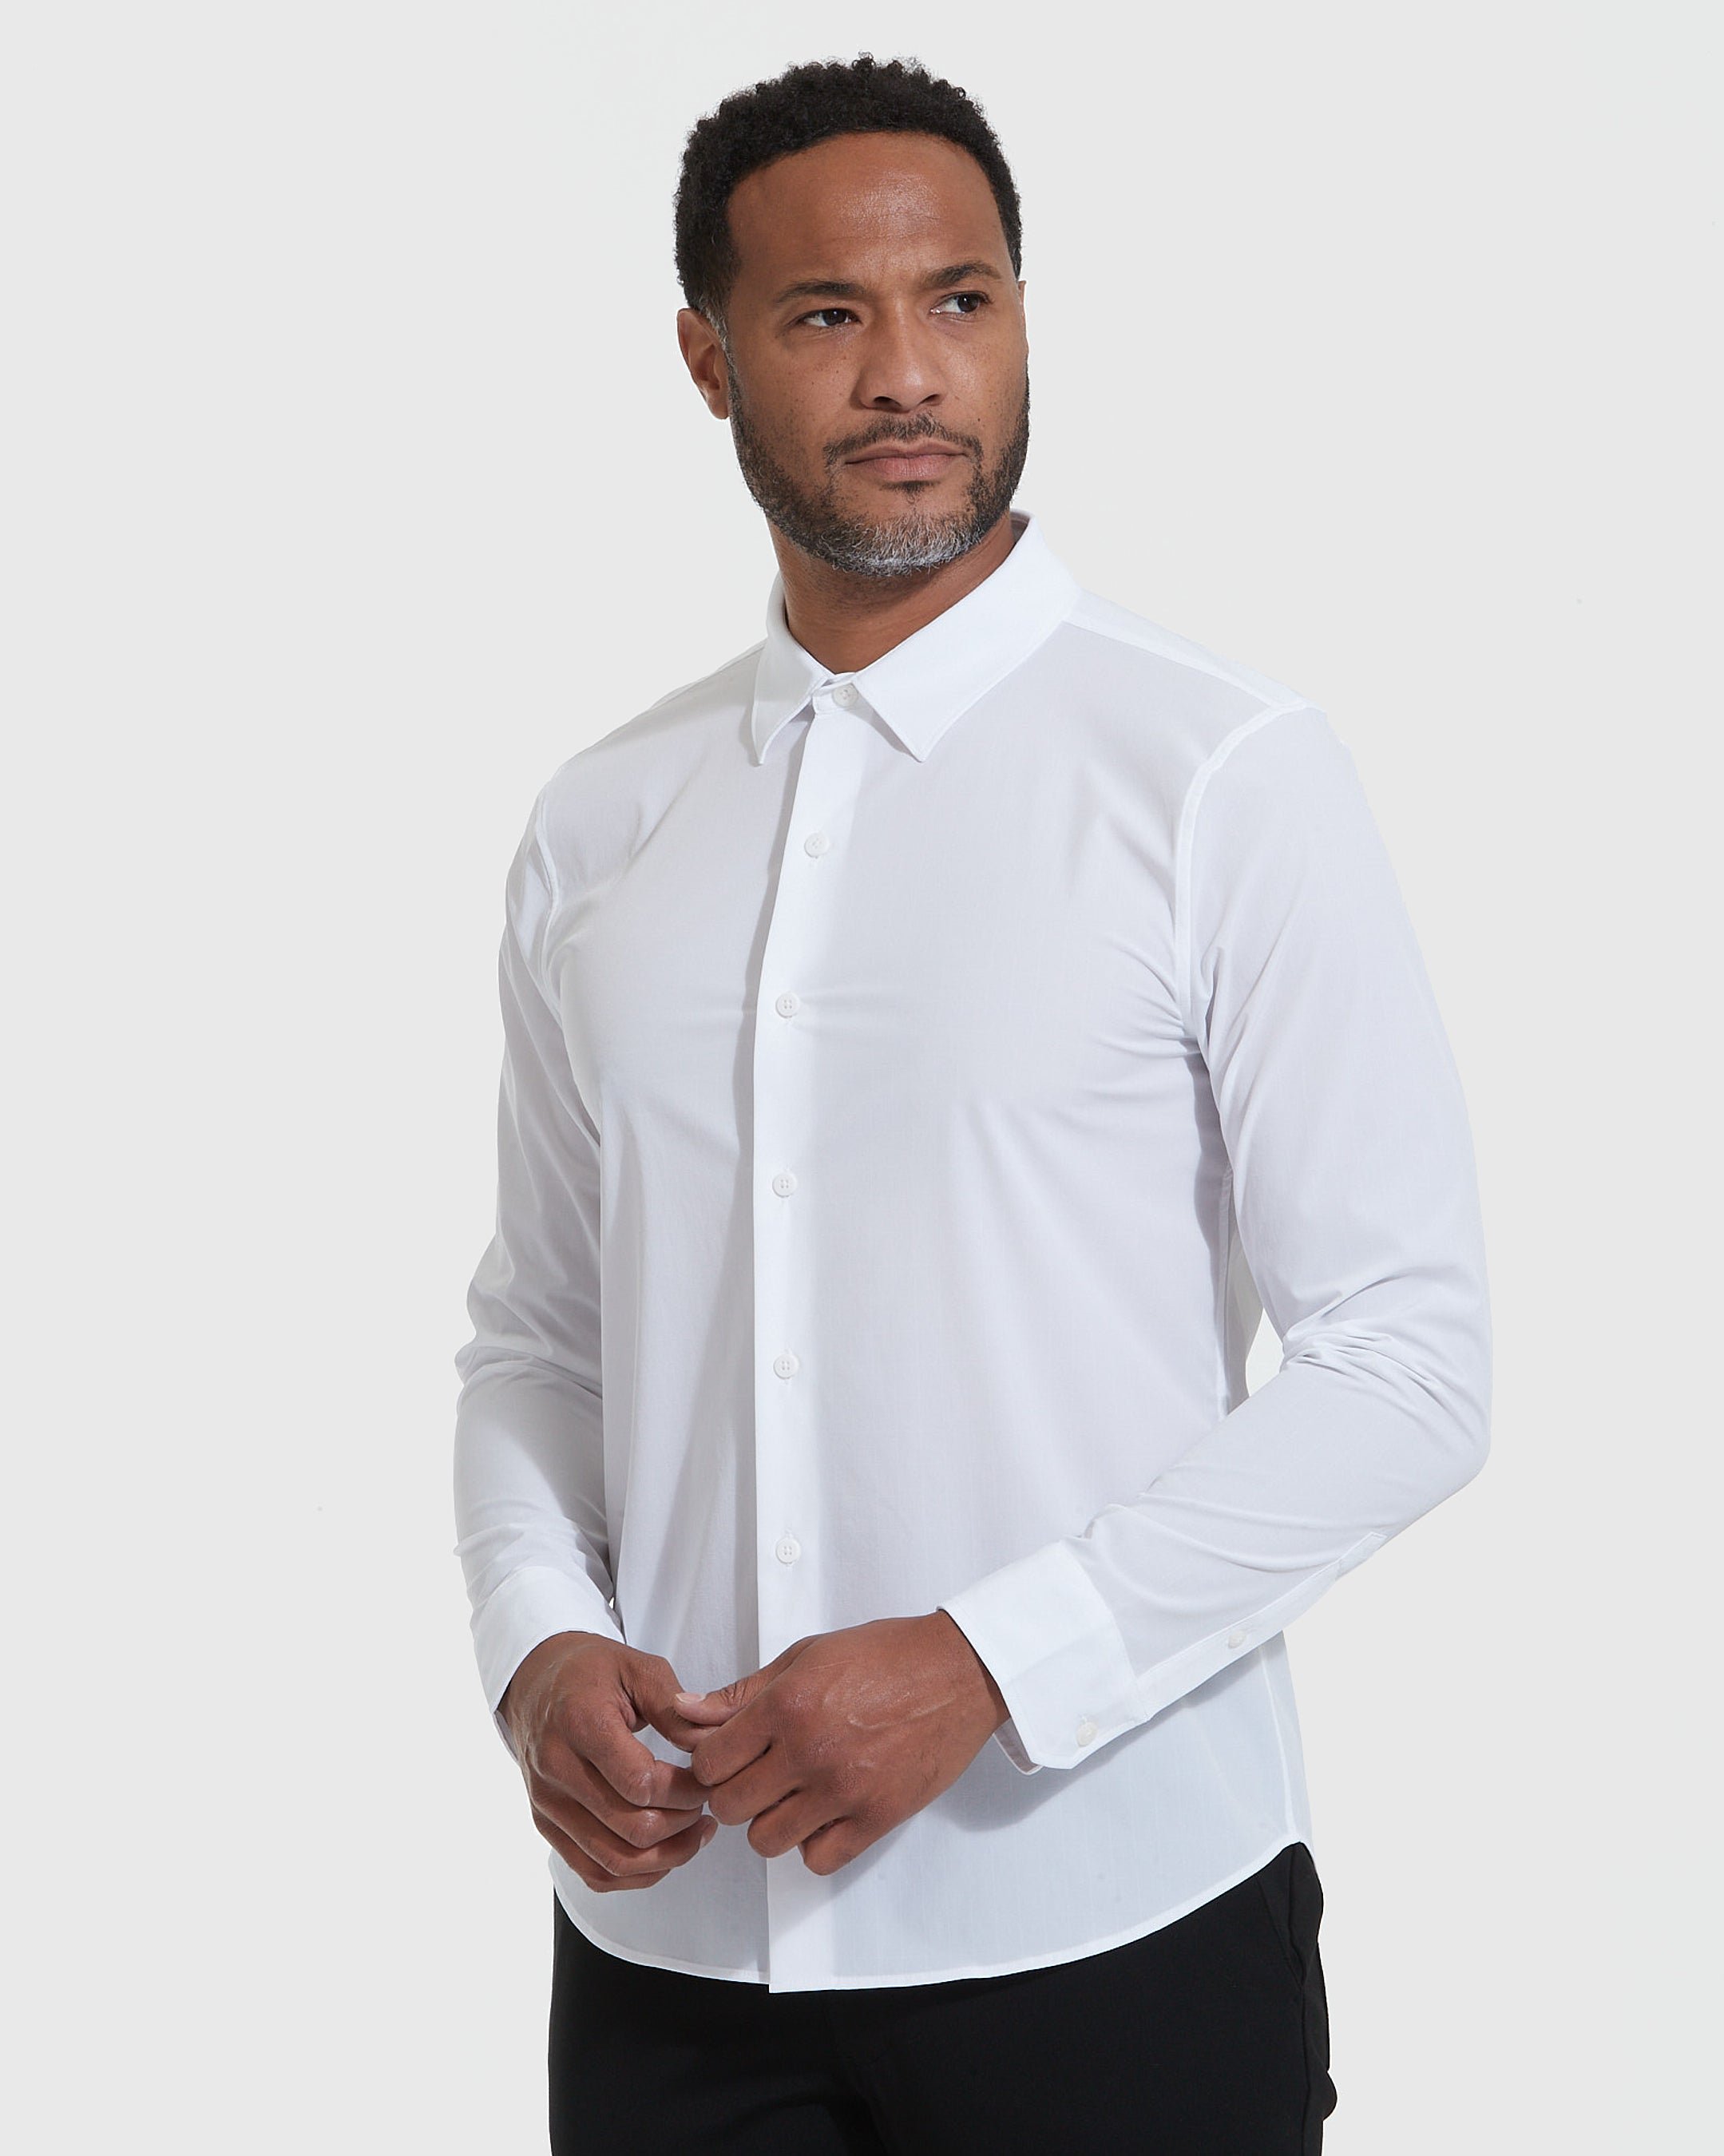 White Commuter Long Sleeve Button Up Shirt